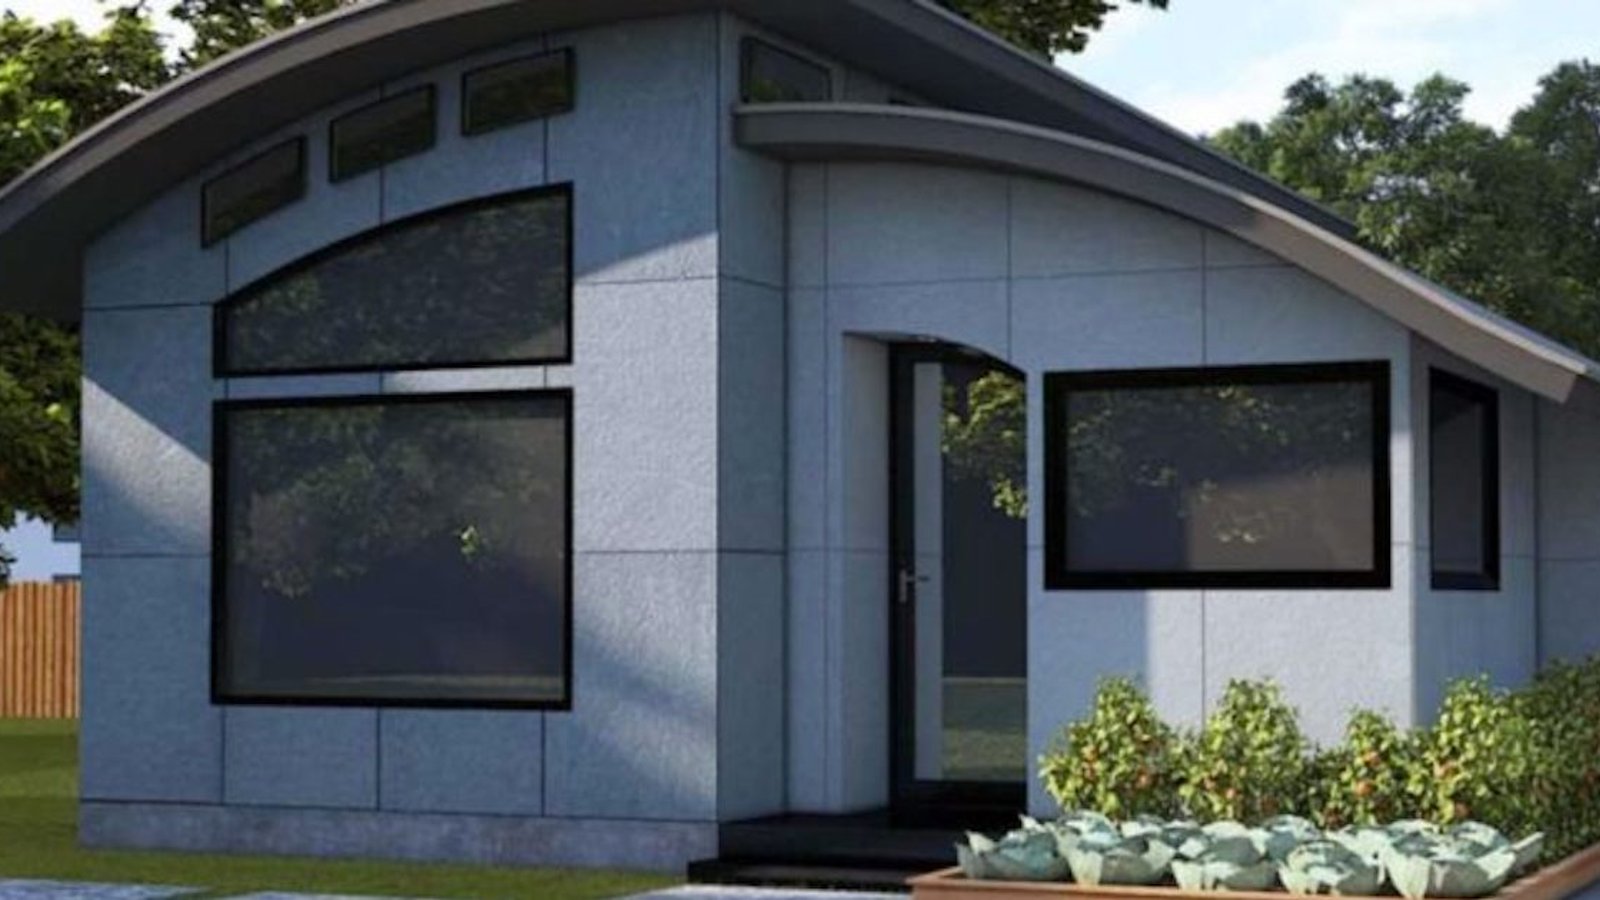 Cette « maison flexible » est l’option durable pour les personnes qui pensent que les tiny houses sont trop petites